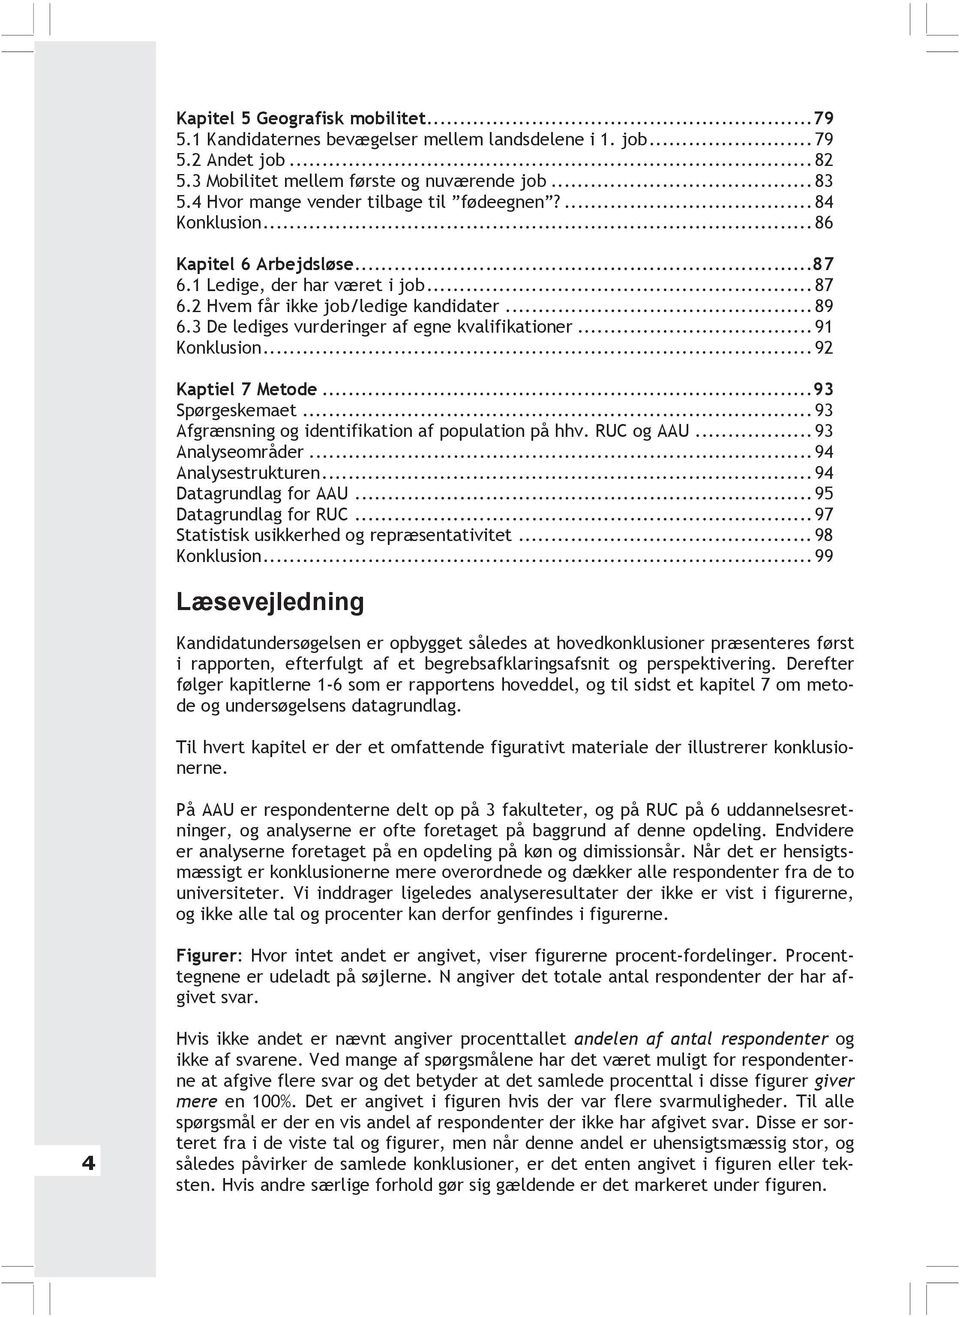 3 De lediges vurderinger af egne kvalifikationer...91 Konklusion...92 Kaptiel 7 Metode...93 Spørgeskemaet...93 Afgrænsning og identifikation af population på hhv. RUC og AAU...93 Analyseområder.